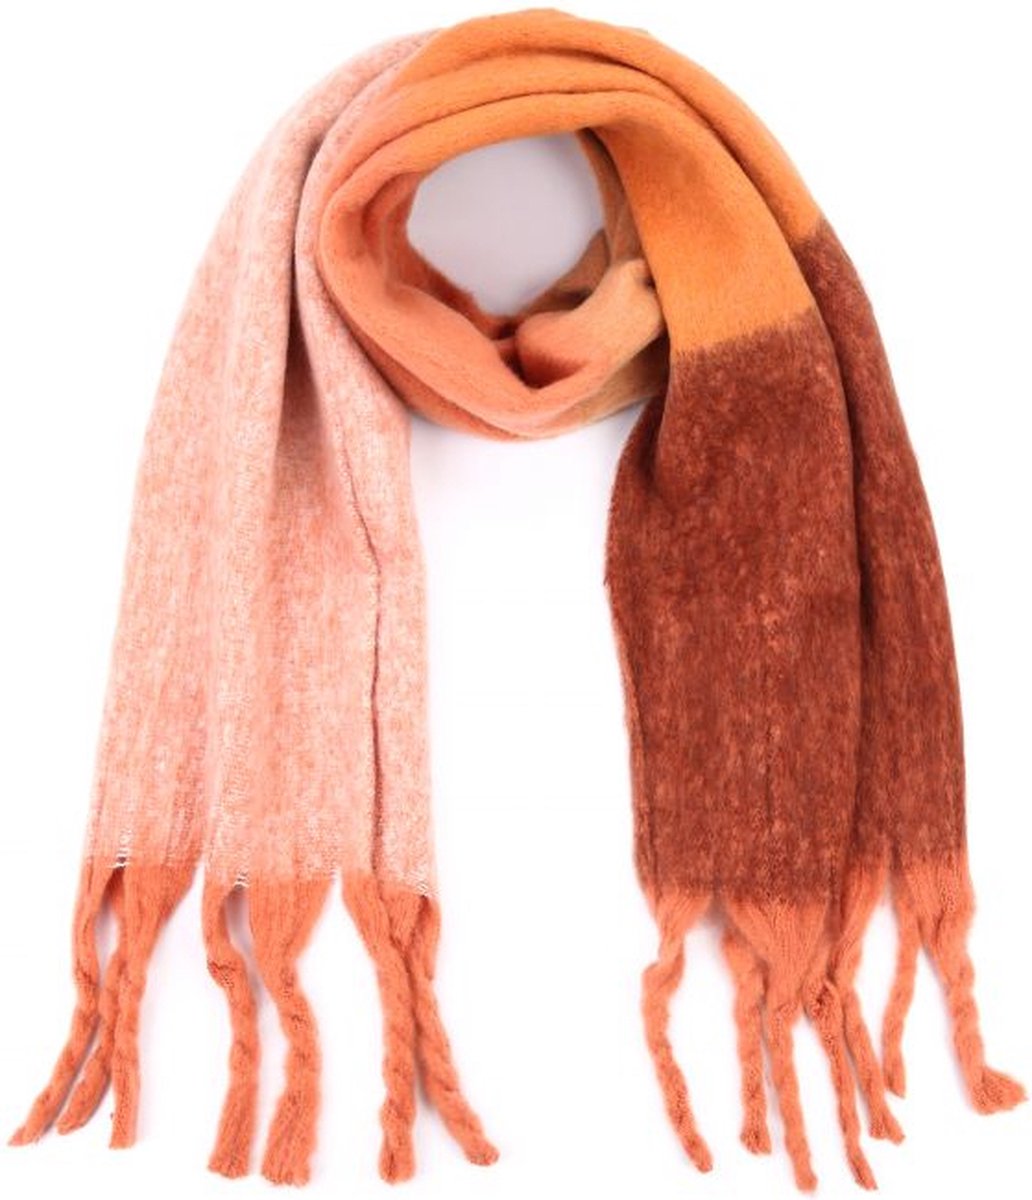 Bruin/Oranje Sjaal Cosy - WIntersjaals - Multi Print- Bruin + Oranje sjaals